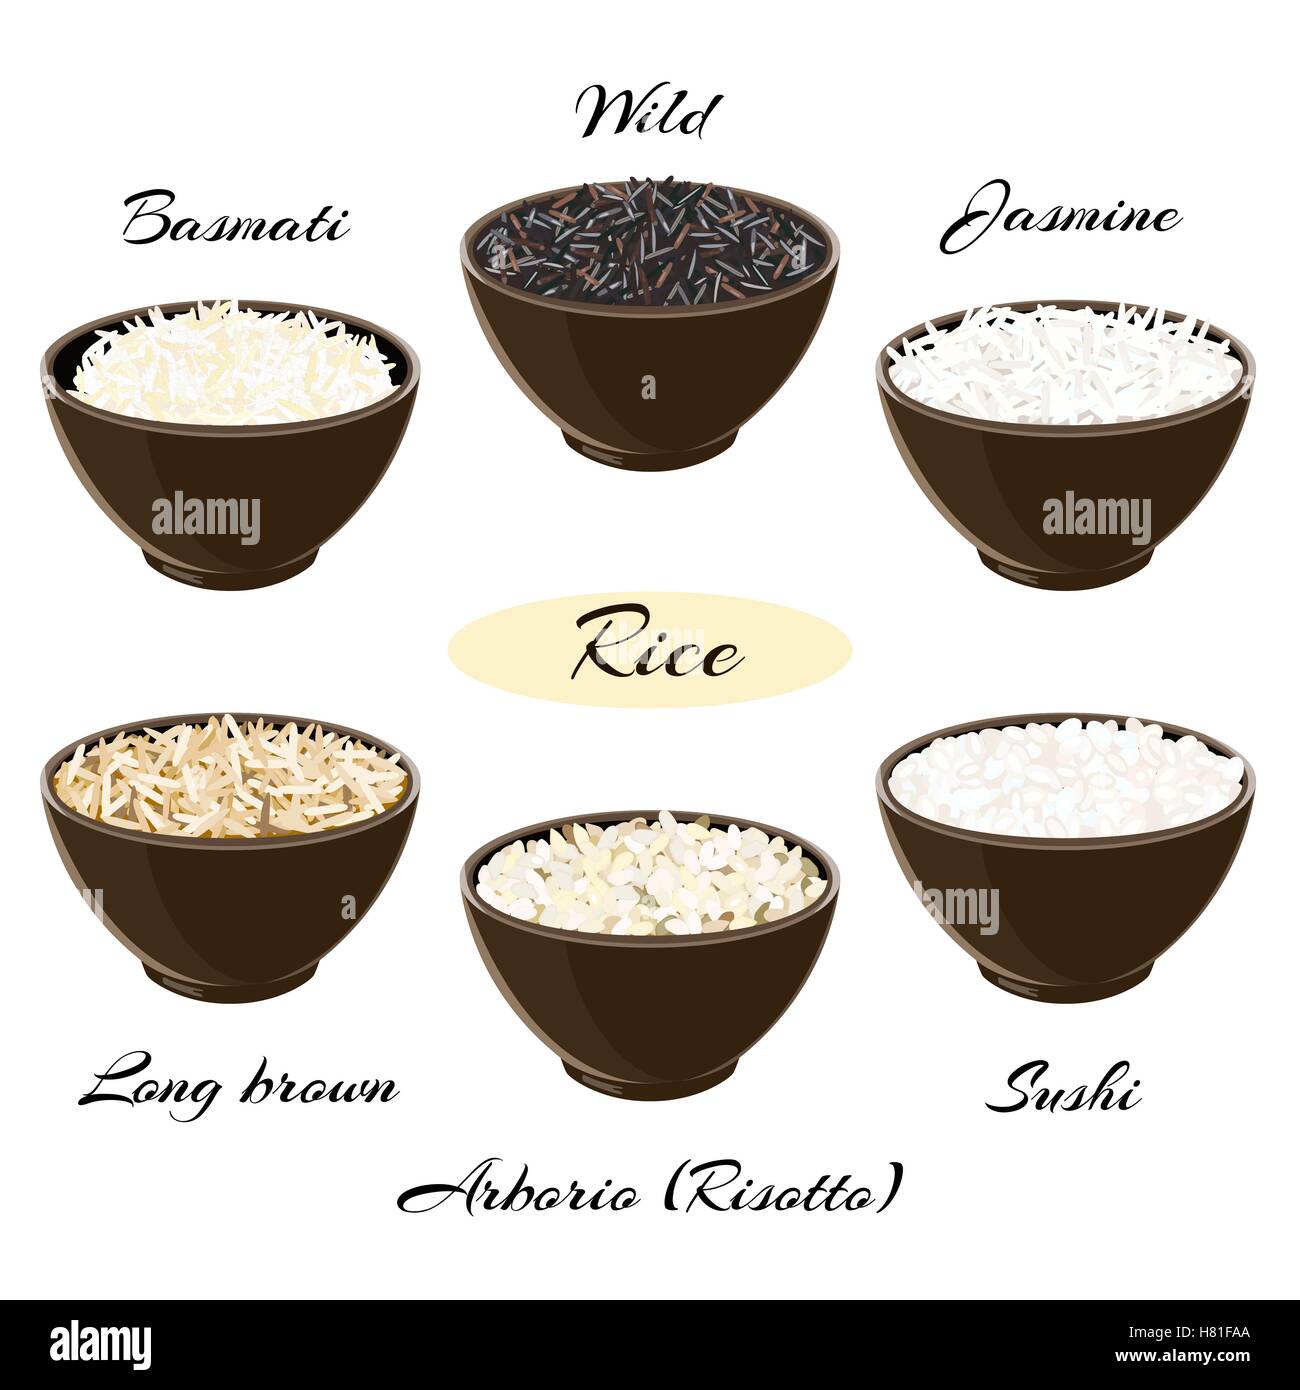 Différents types de riz Basmati, jasmin, sauvages, long, brun, arborio sushi dans des bols en céramique illustration vecteur EPS 10. Illustration de Vecteur